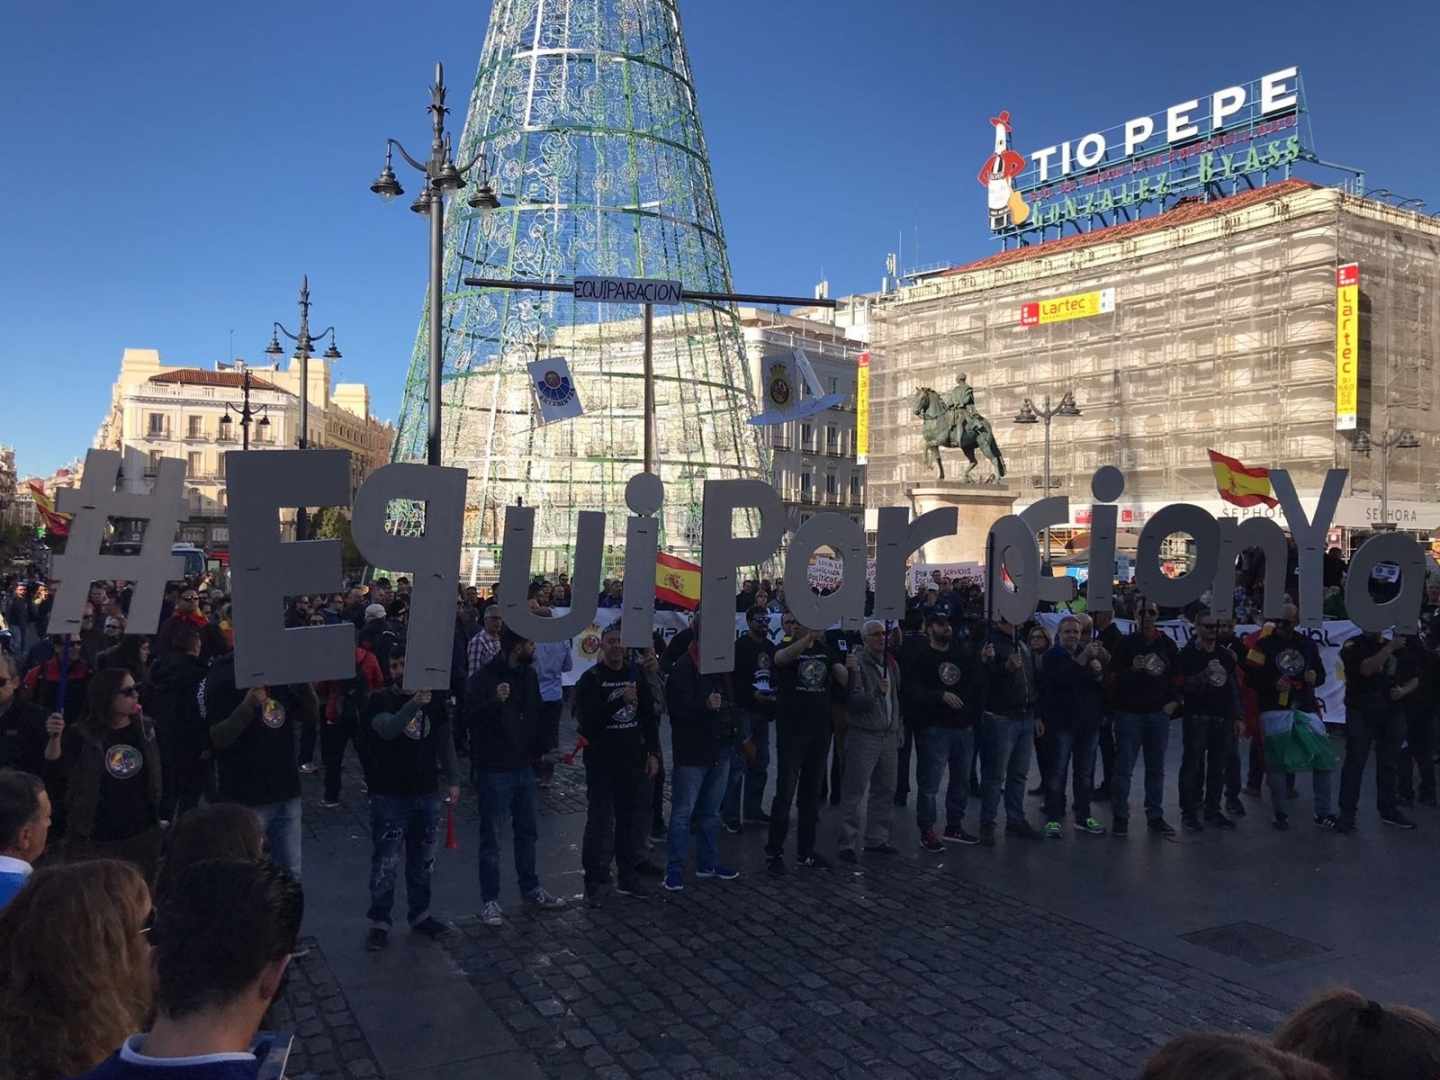 Manifestación en favor de la equiparación salarial de los policías en la céntrica Puerta del Sol de Madrid.